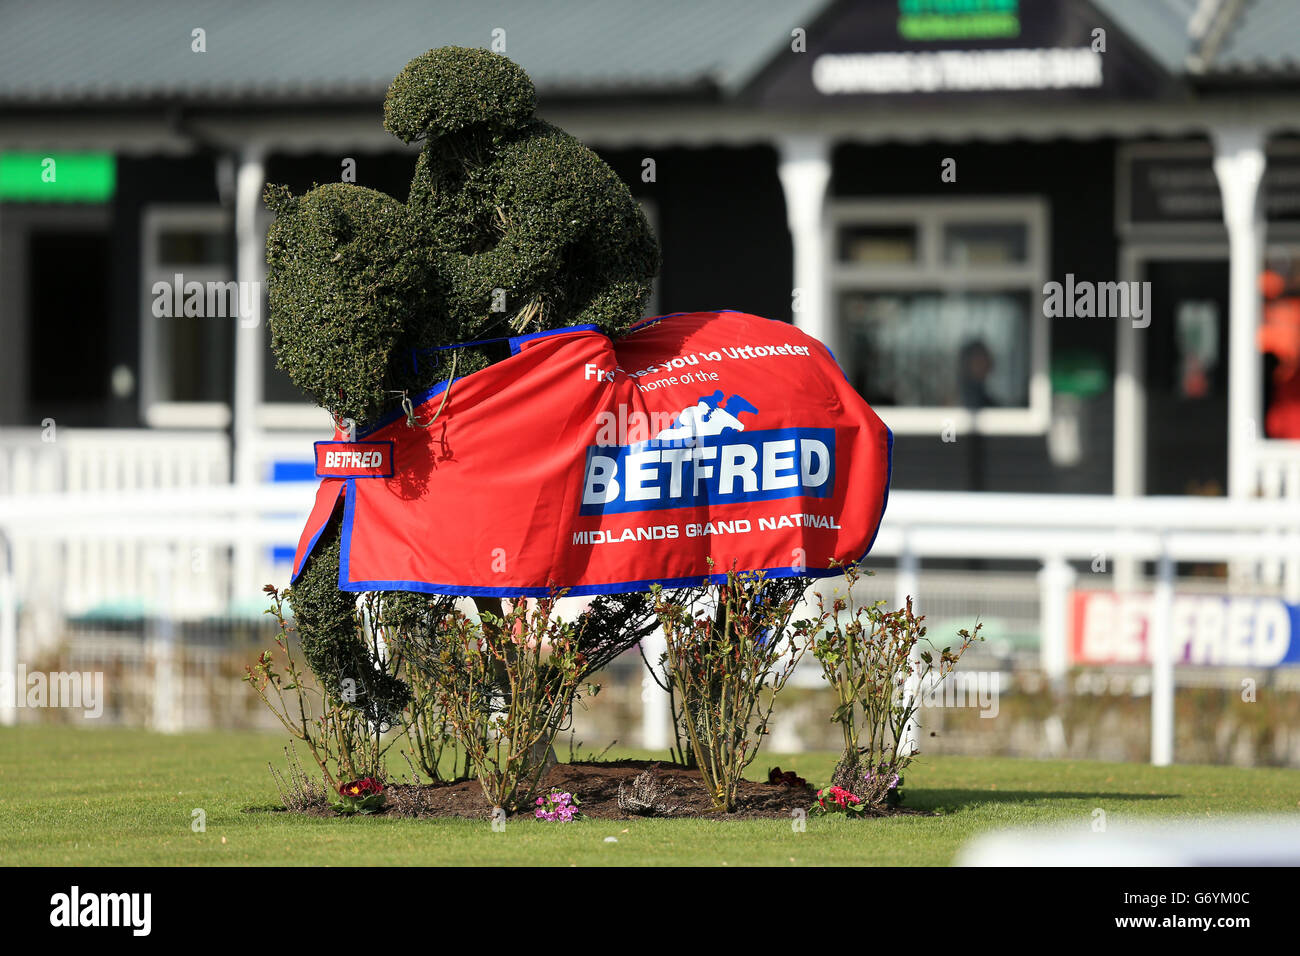 Topiario en forma de jockey y caballo de carreras Un anuncio de Betfred Midlands Grand National Foto de stock